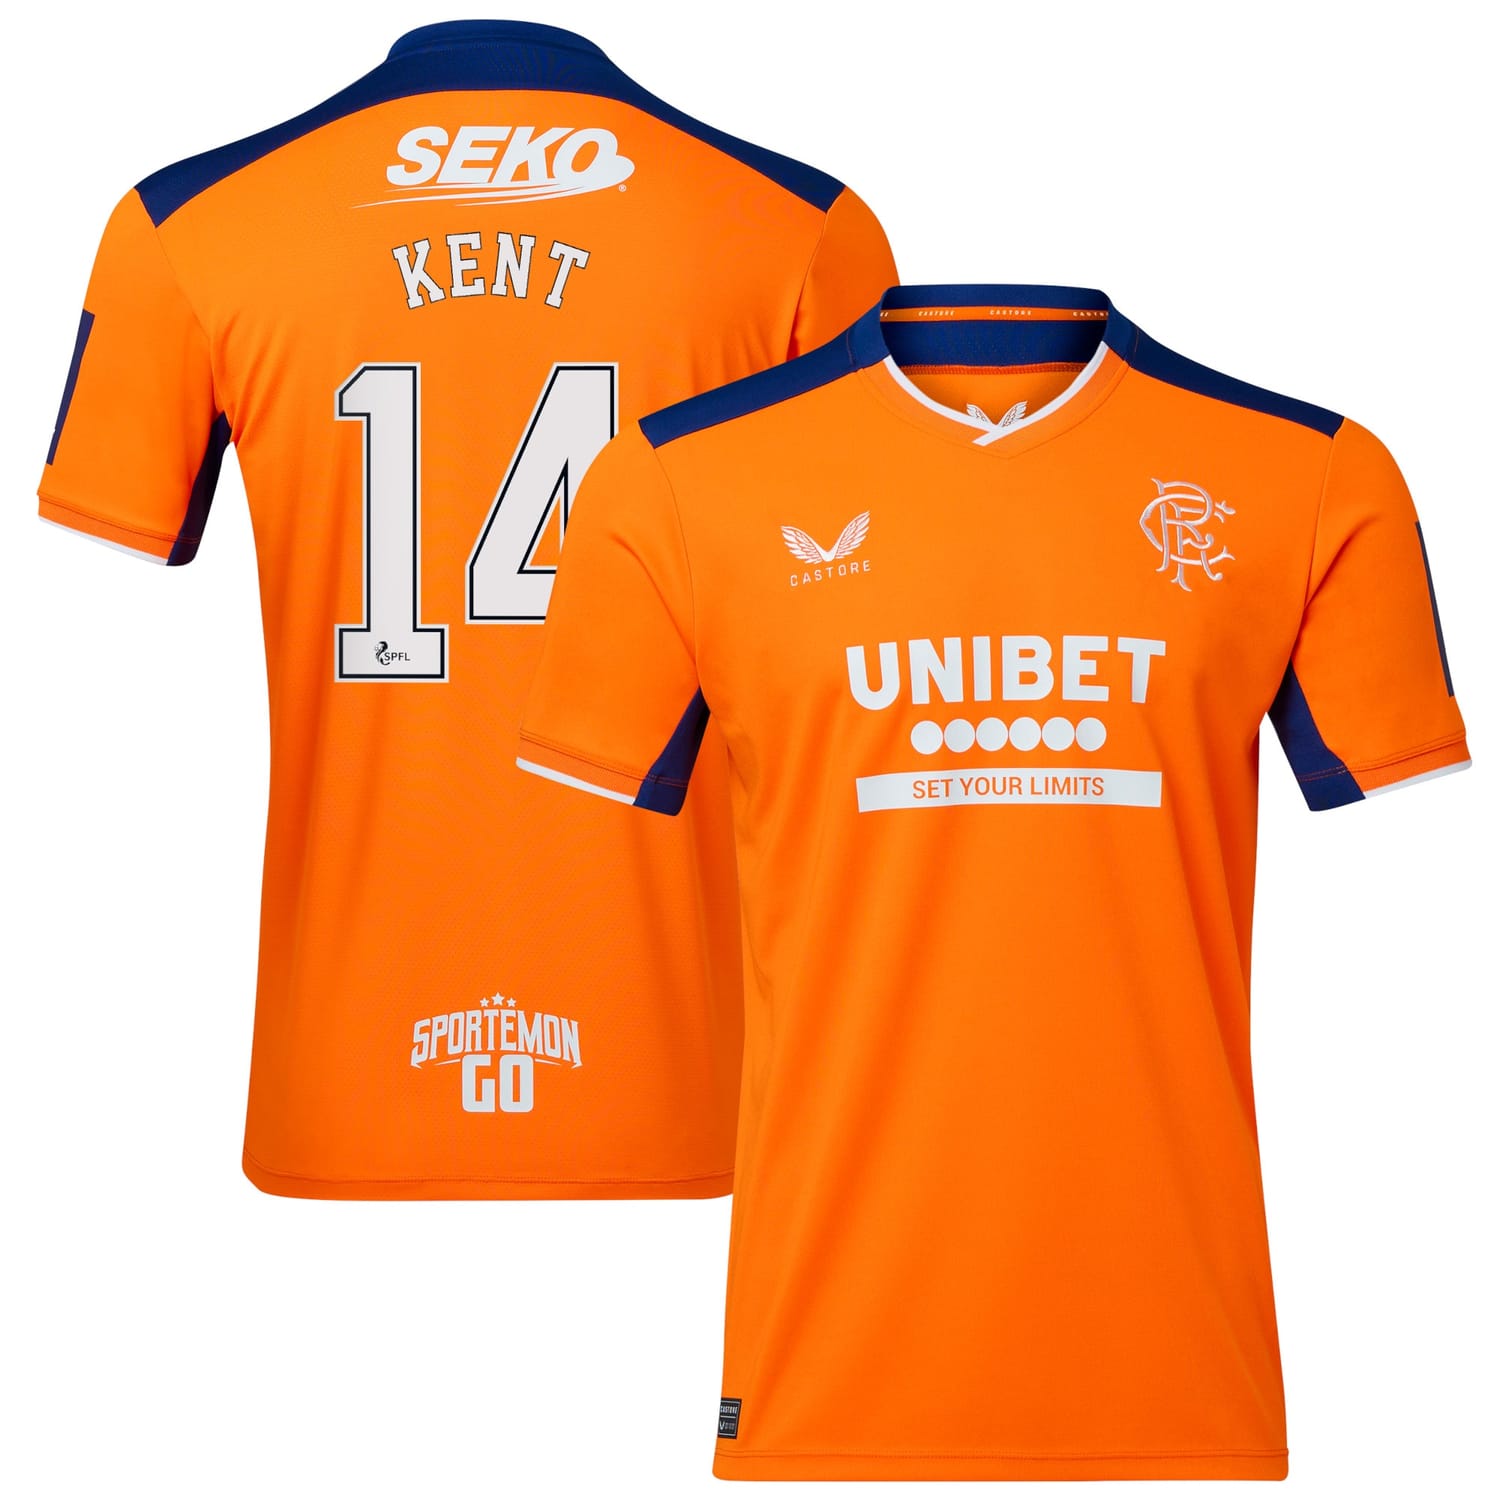 Scottish Premiership Rangers FC Third Jersey Shirt 2022-23 player Ryan Kent 14 printing for Men